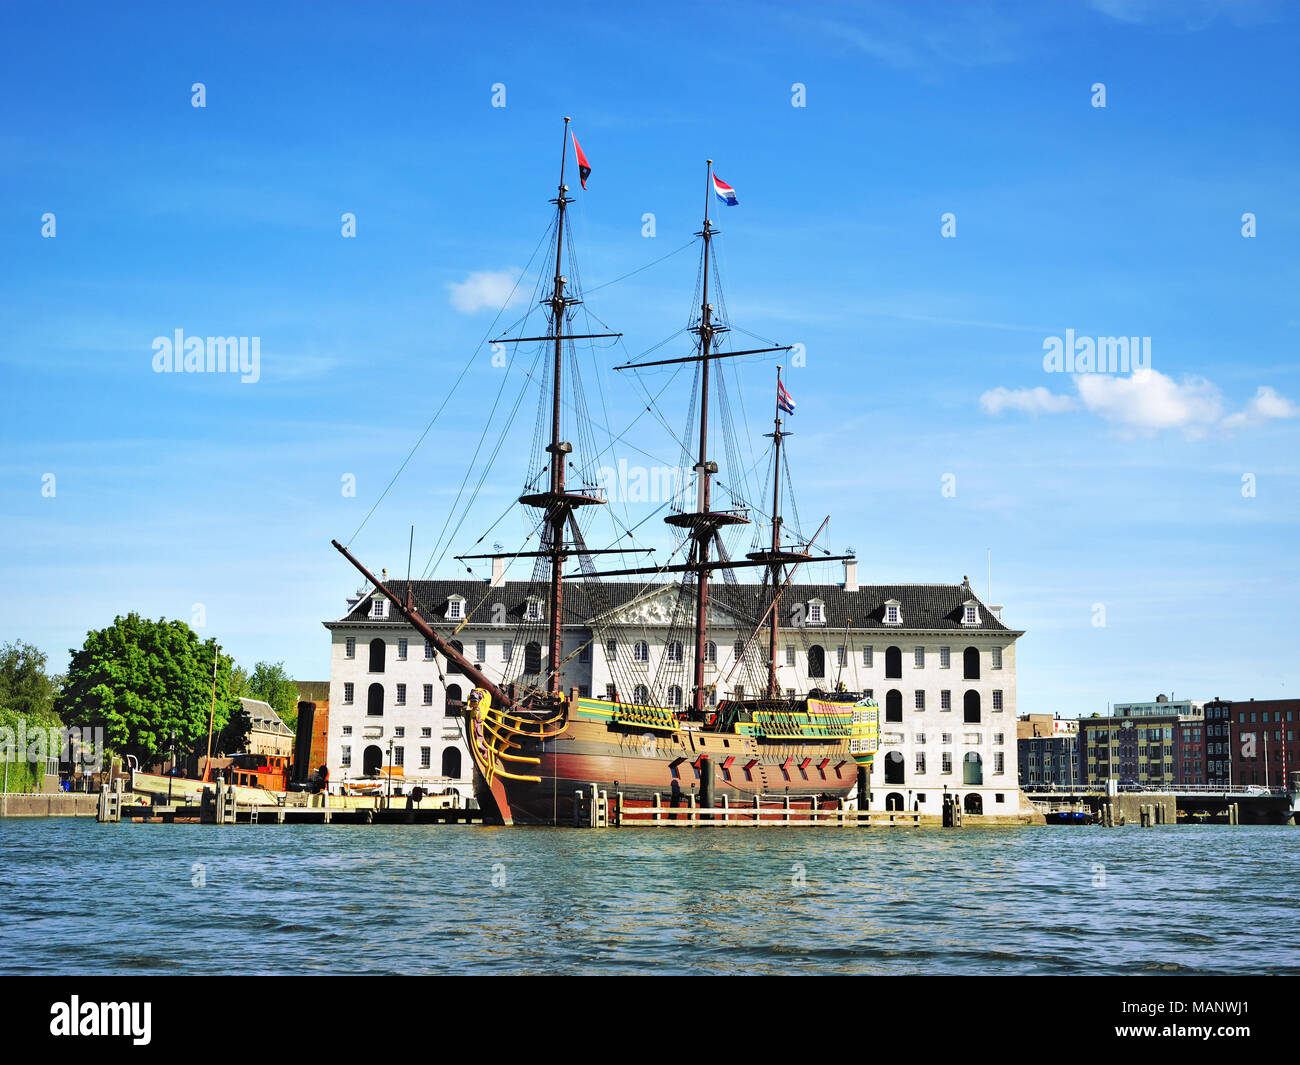 Bateau de pirate ou bateau en bois en face d'un bâtiment historique d'Amsterdam. L'attraction touristique, un navire. Banque D'Images